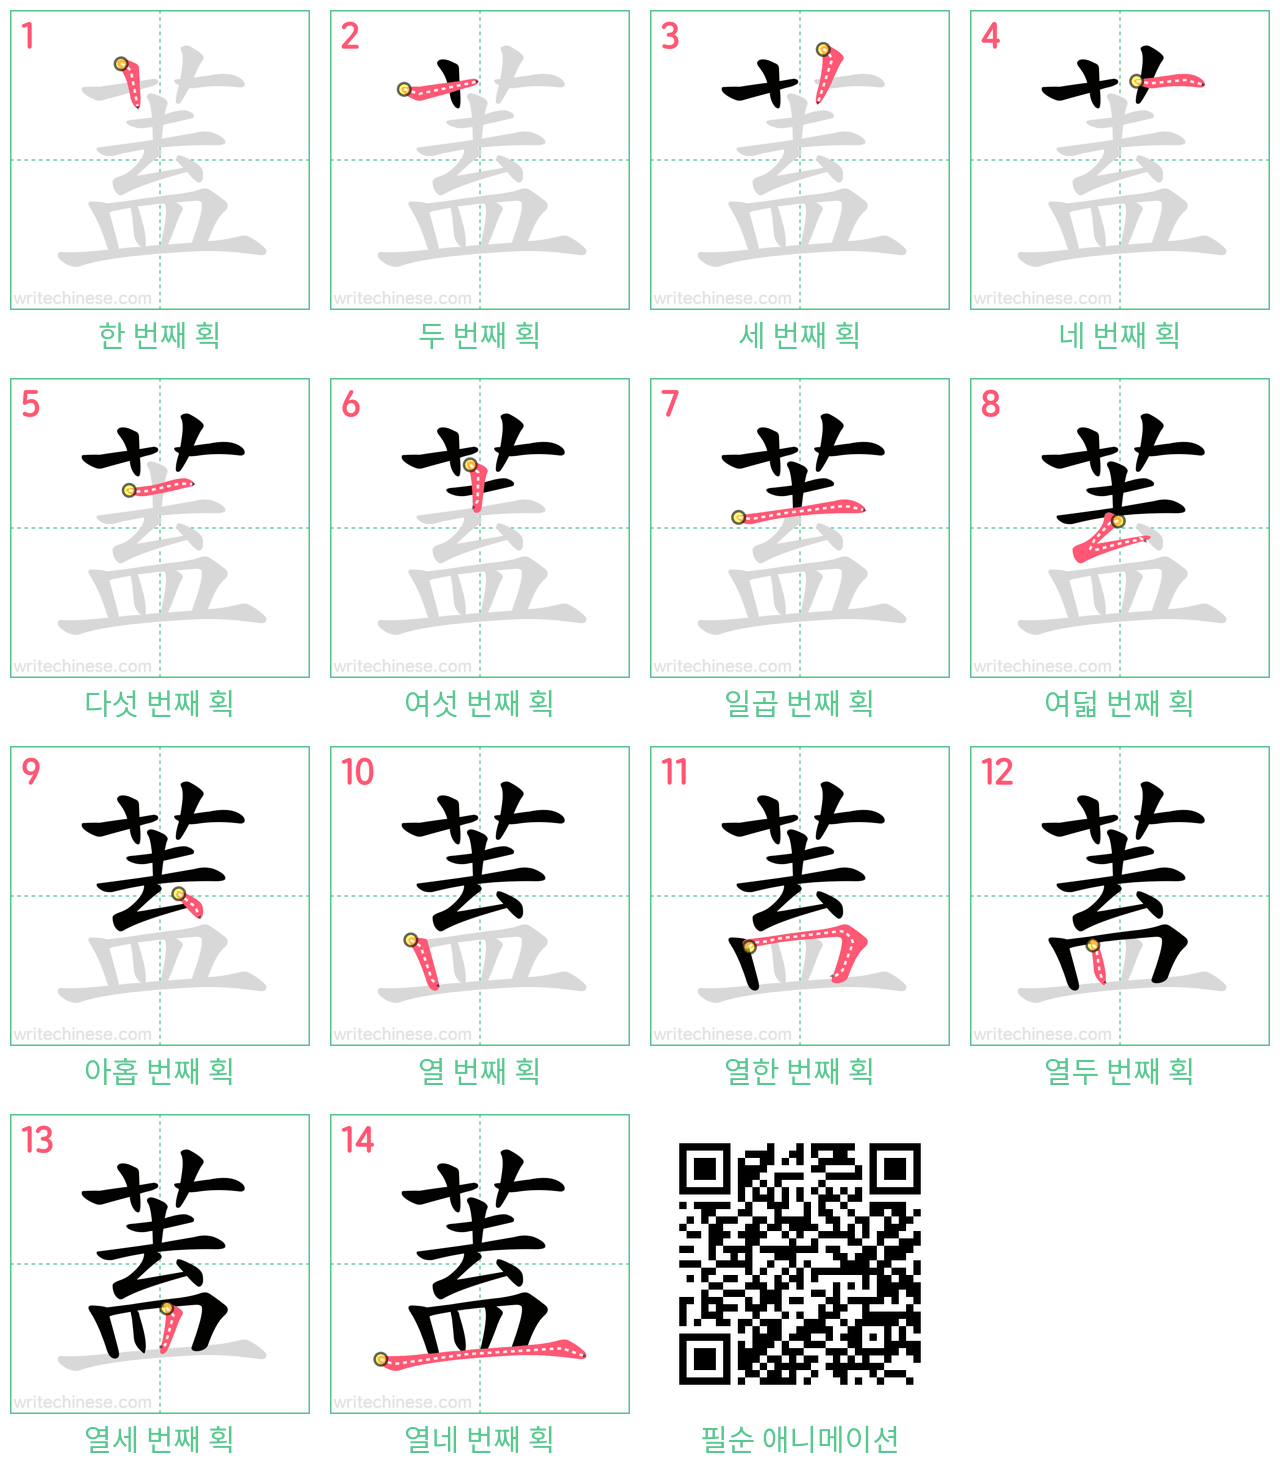 蓋 step-by-step stroke order diagrams